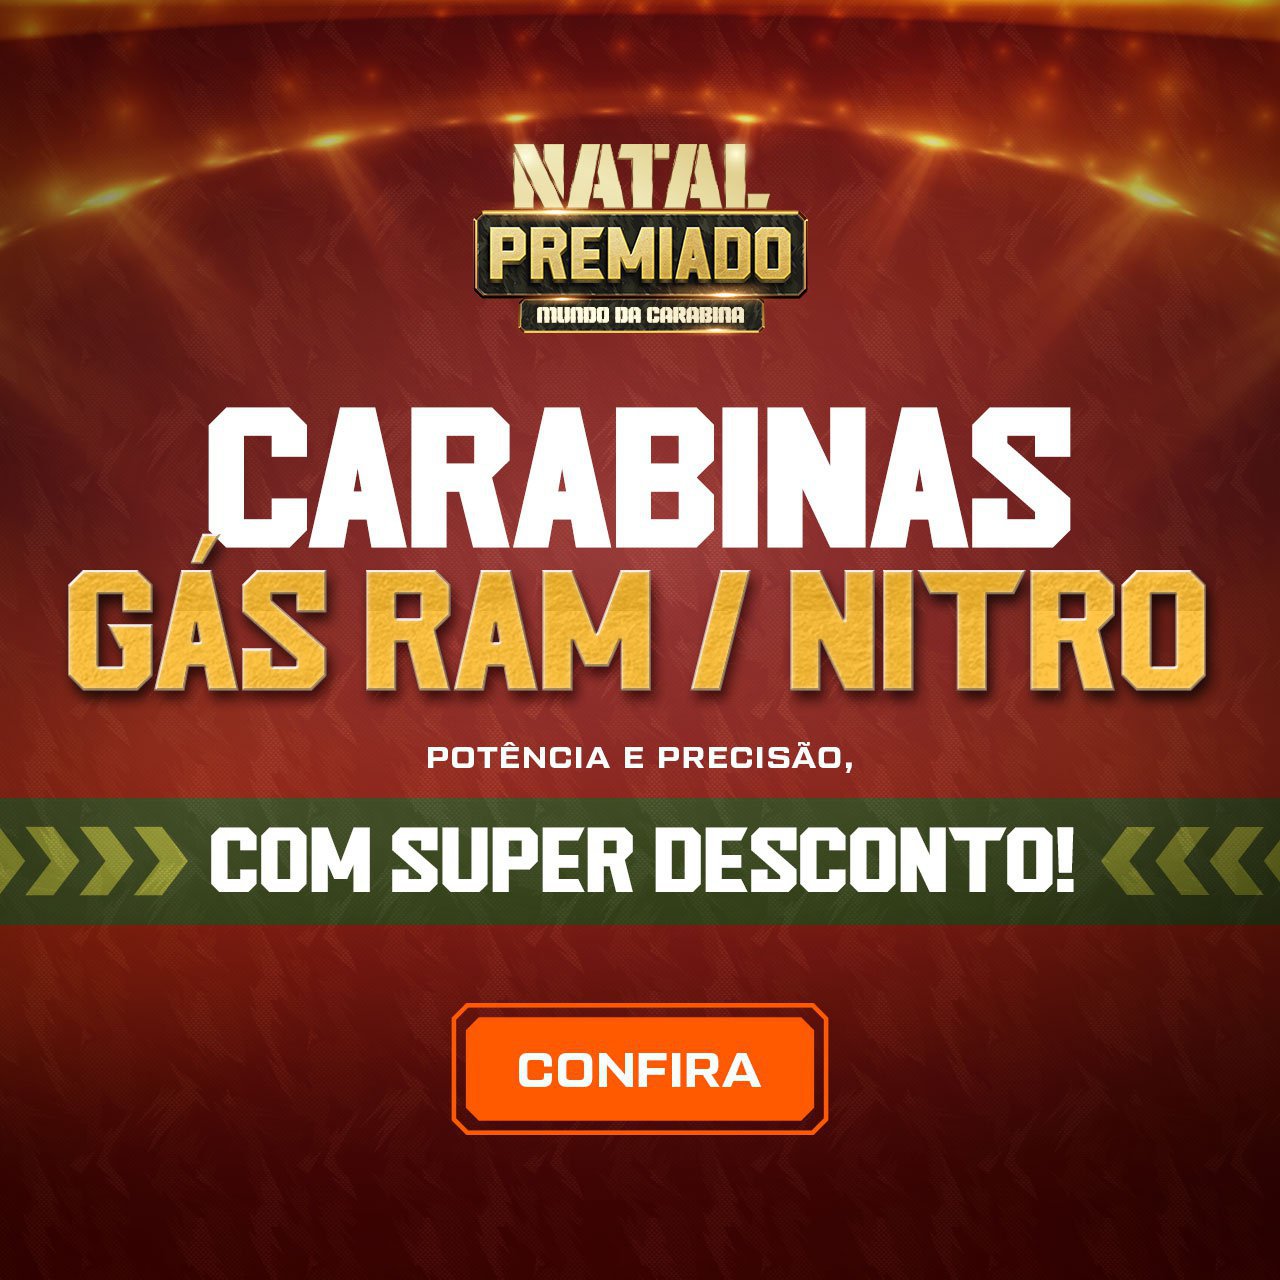 CARABINAS GAS RAM / NITRO - Potência e Precisão, com SUPER DESCONTO!